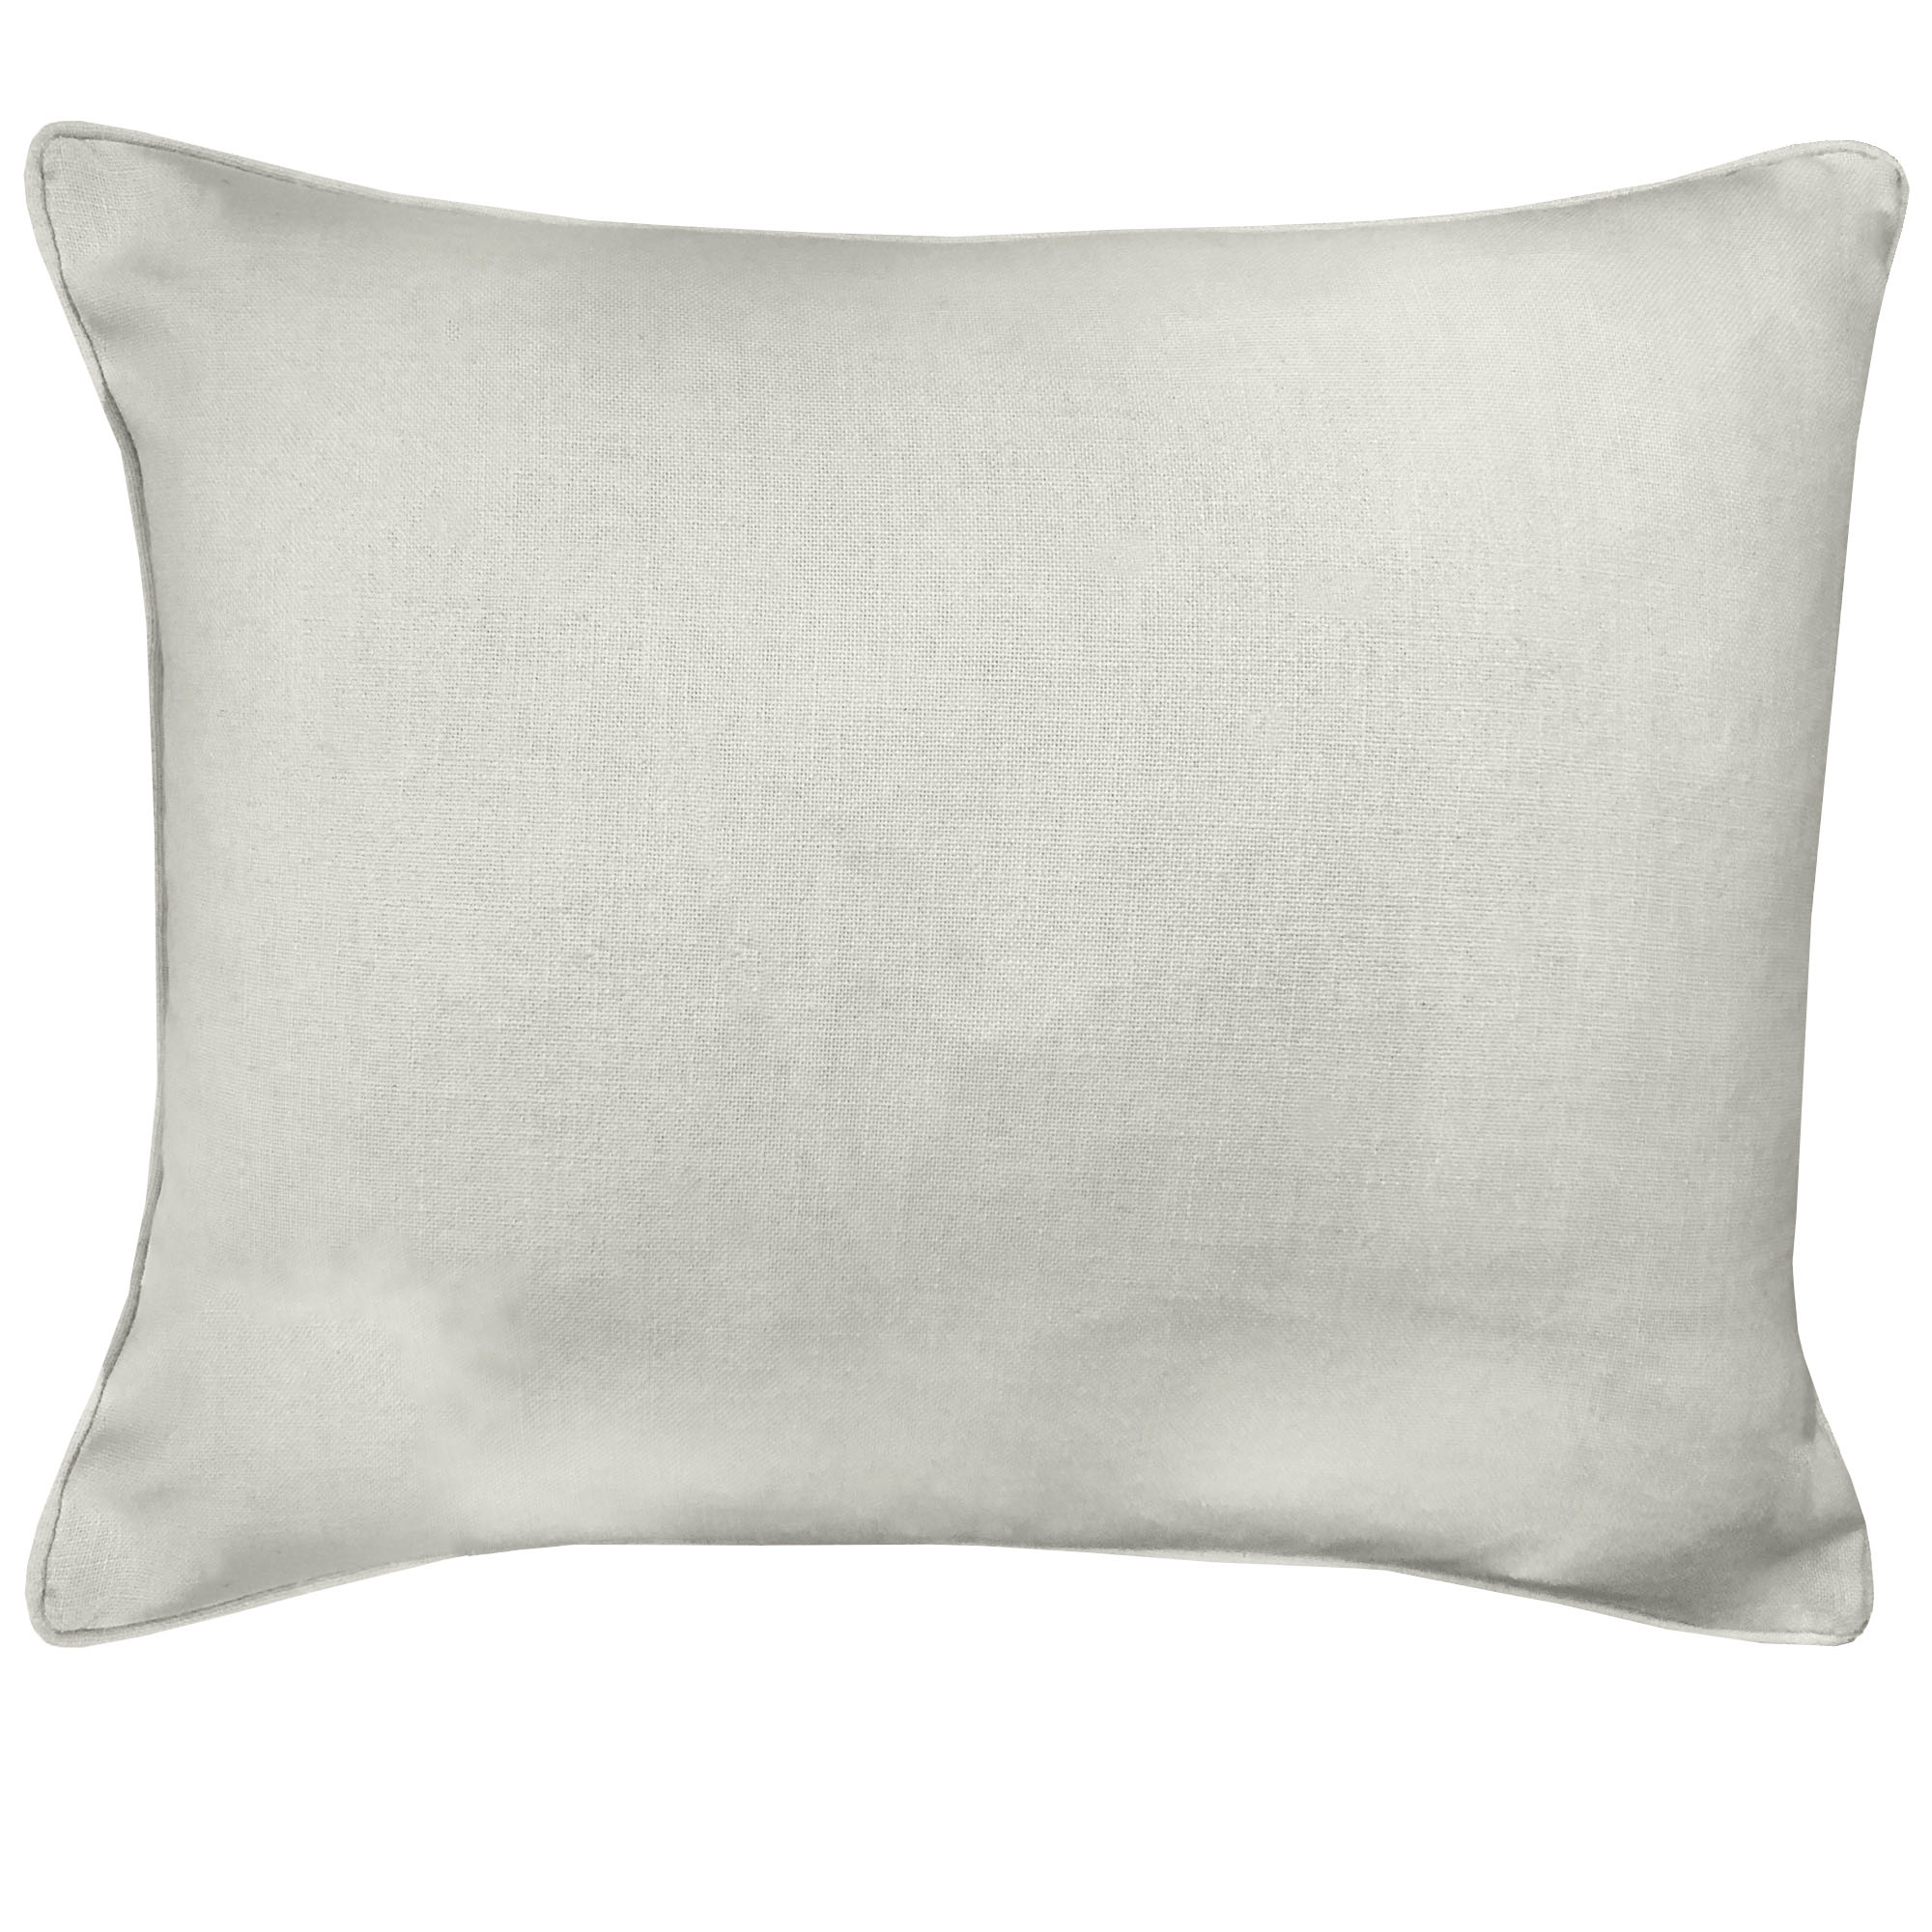 Brandis Pillows | Size 20X24